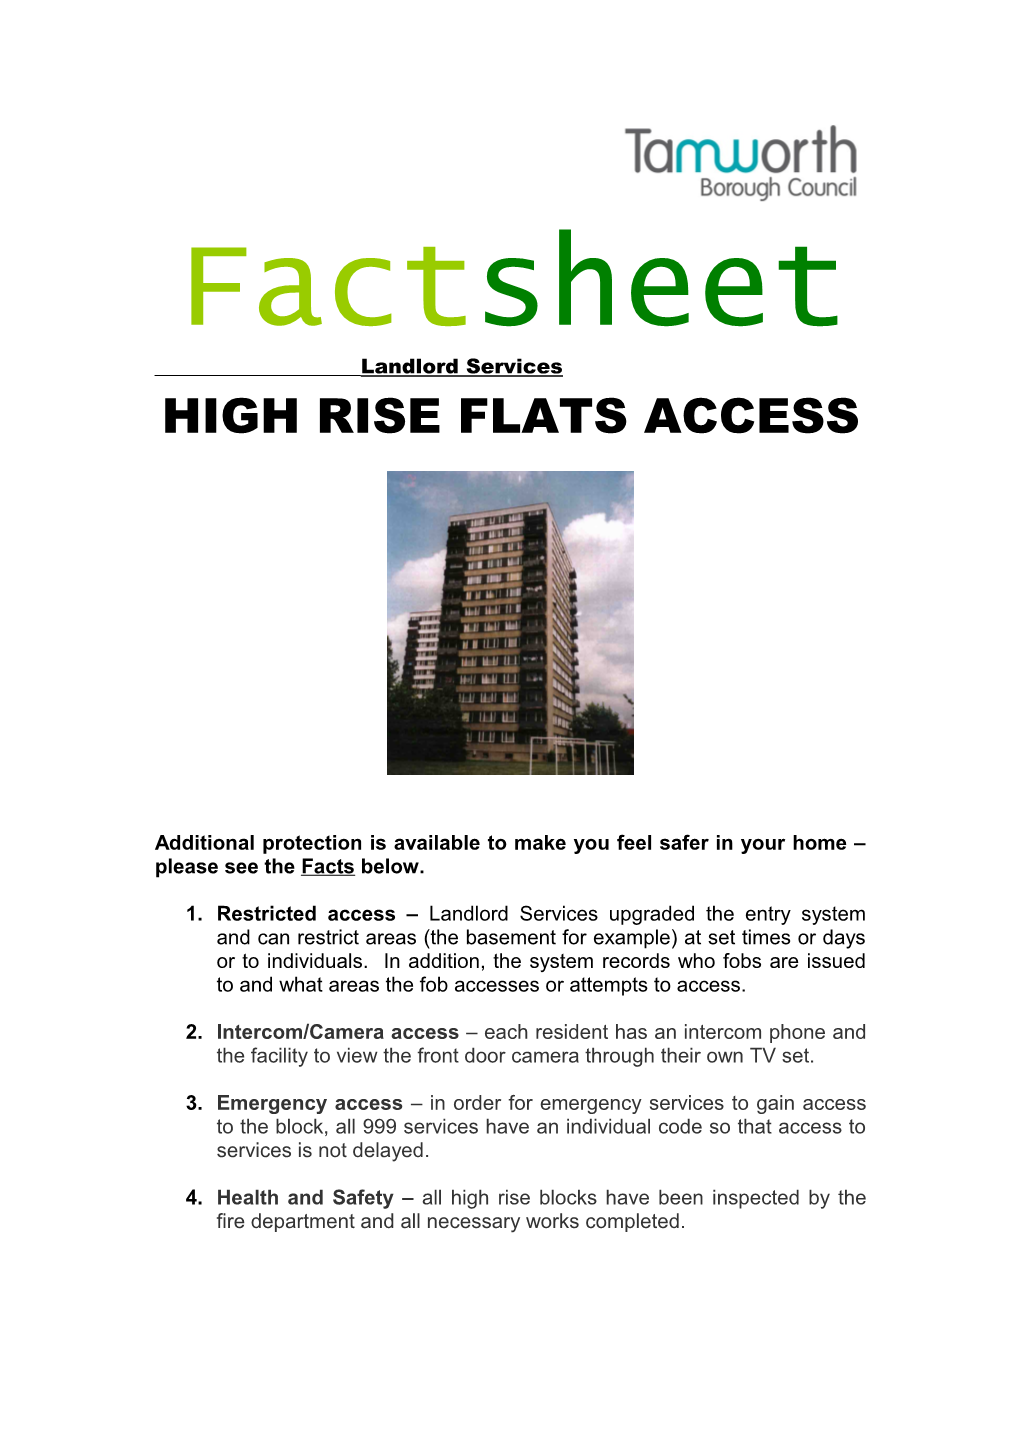 High Rise Flats Access